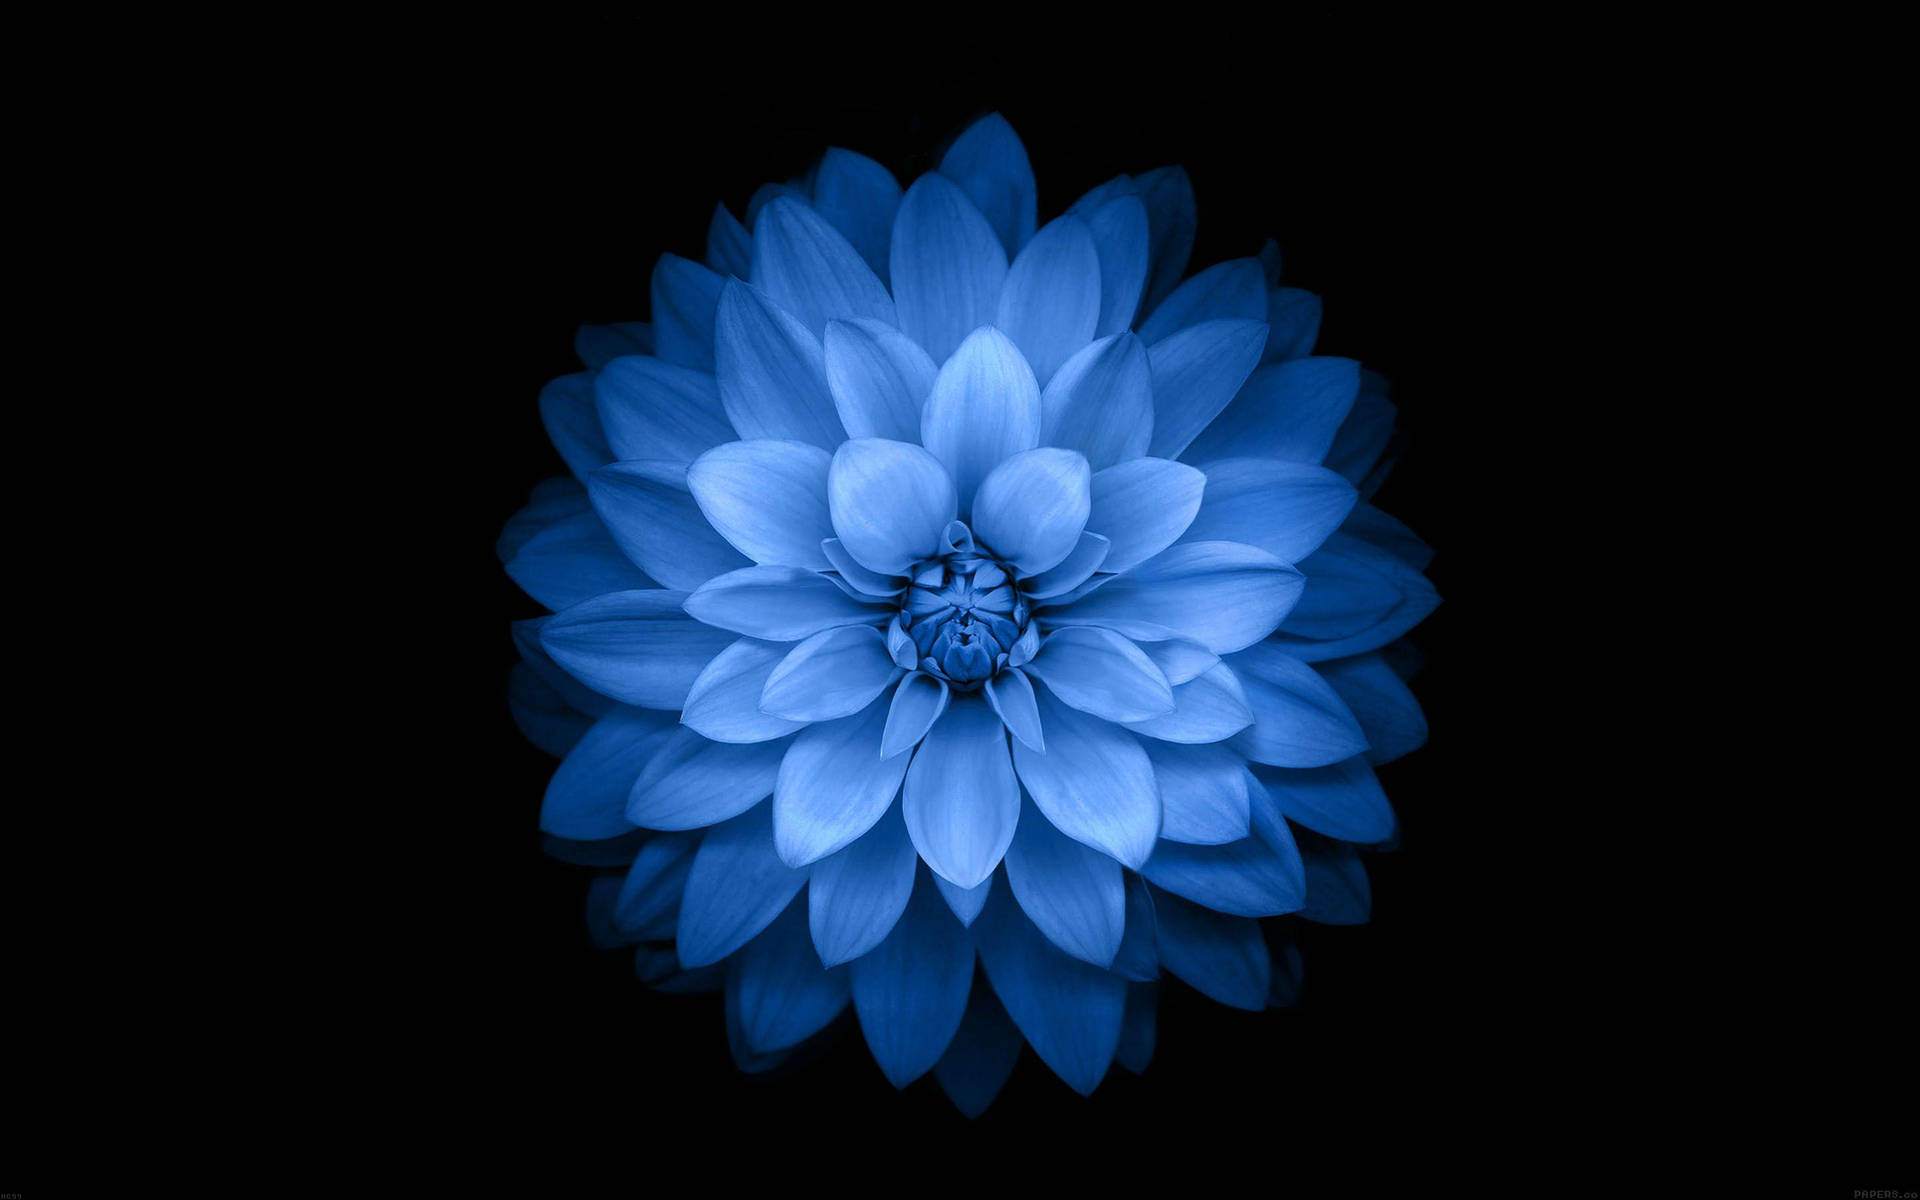 Dark Blue Aesthetic Giant Flower Background